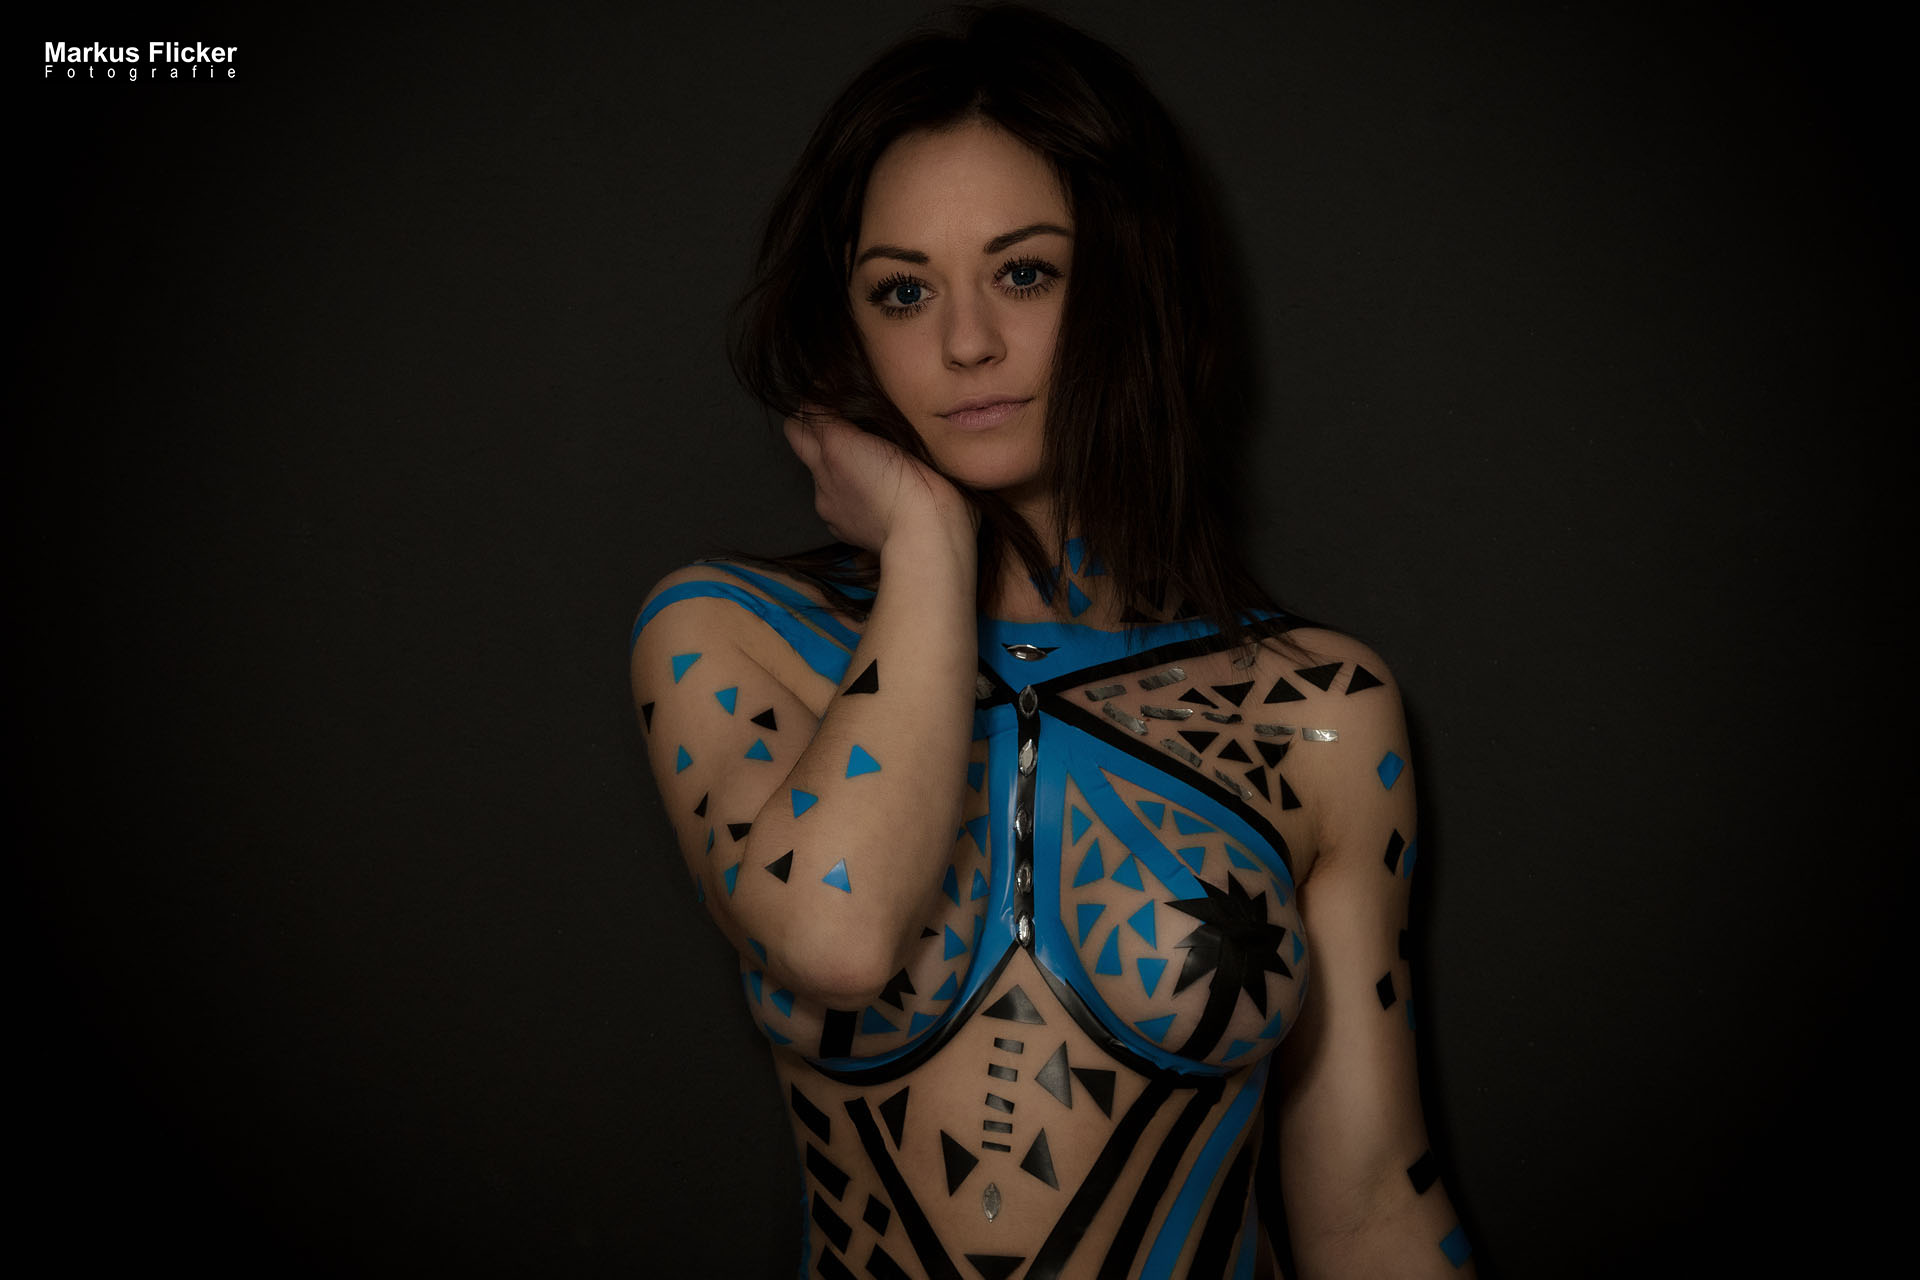 Aktfotoshooting im Fotostudio Fotoshooting im Studio Female Model Bianca Klebeband auf Körper #TapeTheModelPhotography